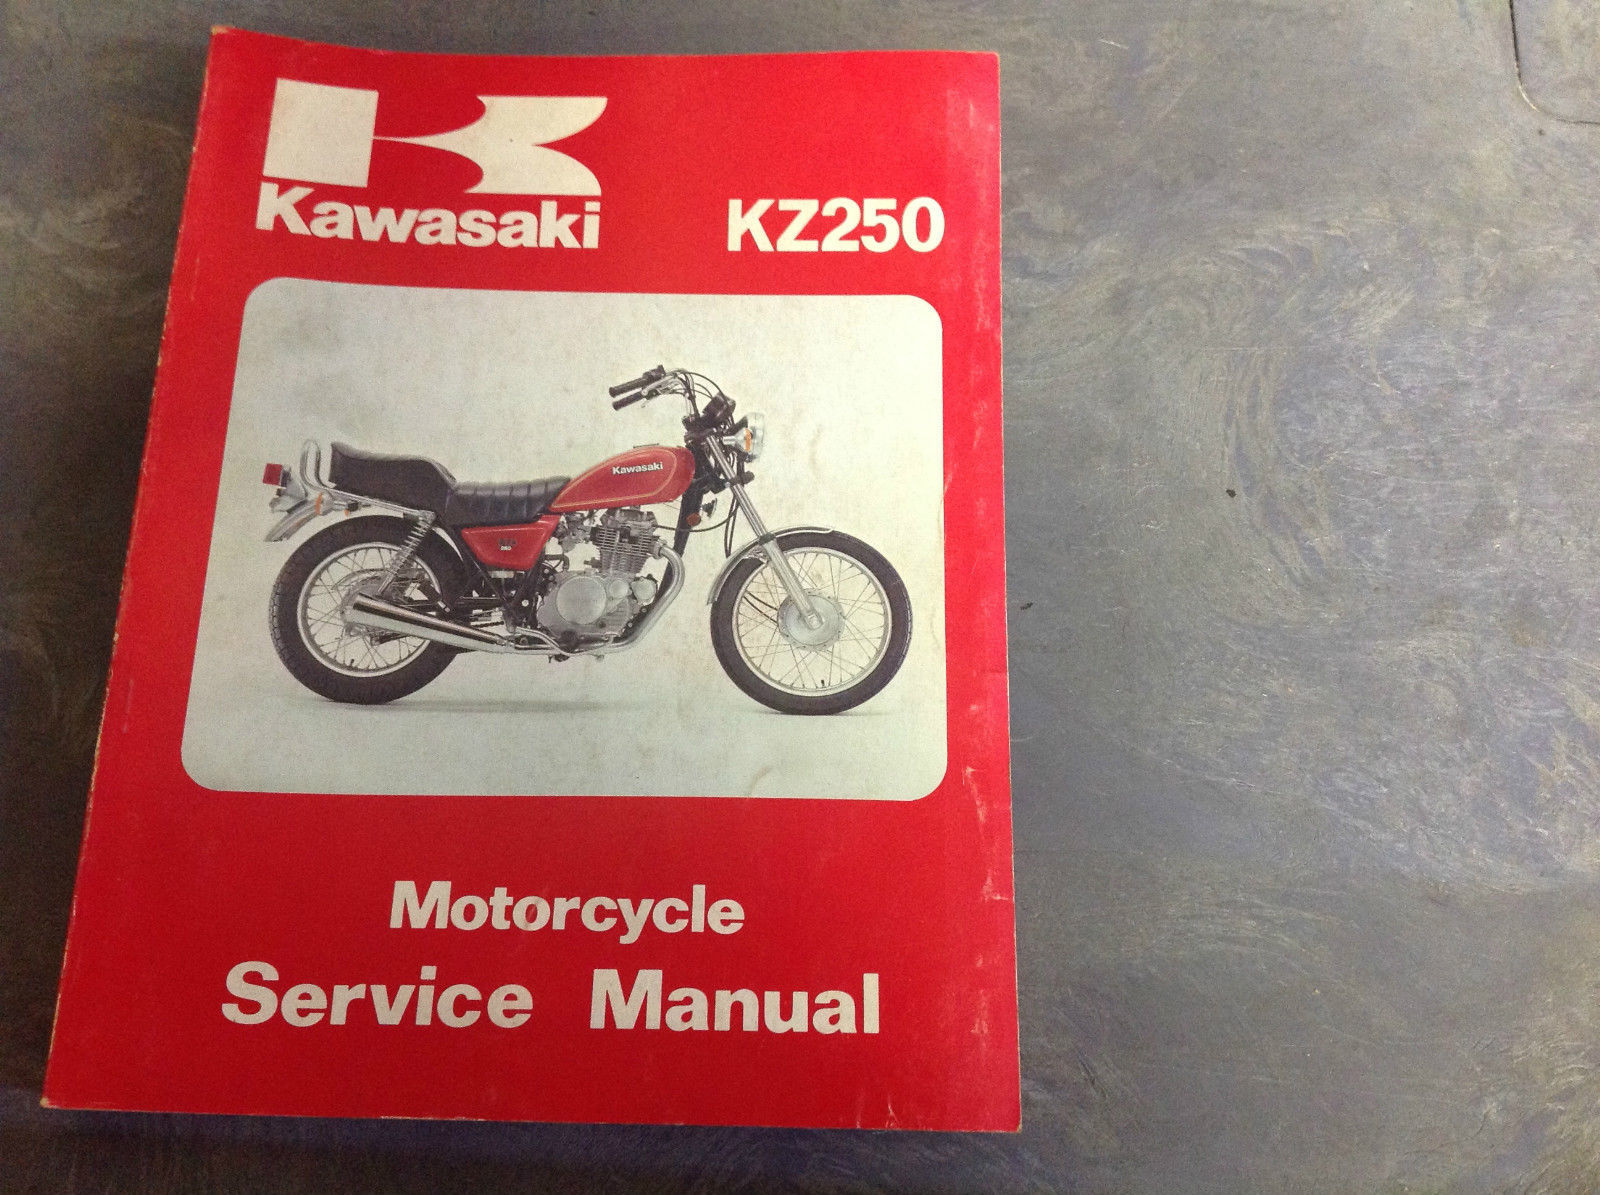 1980 Kawasaki 250 Motorcycle and 50 similar items